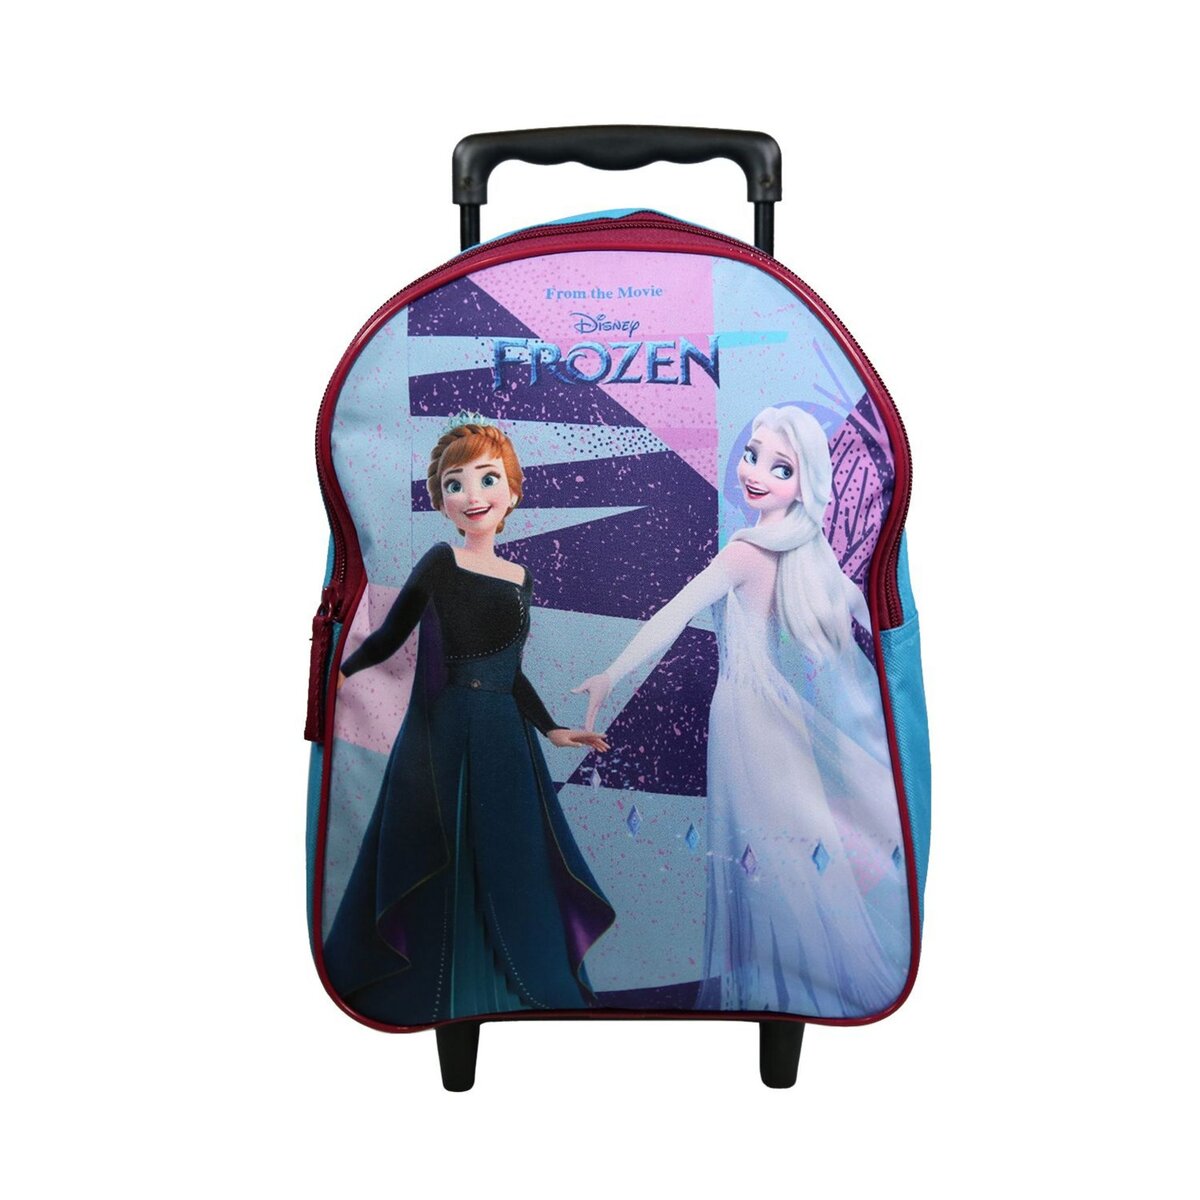 Bagtrotter BAGTROTTER Sac à dos à roulettes 31 cm Disney La Reine Des Neiges / Frozen Multicolore